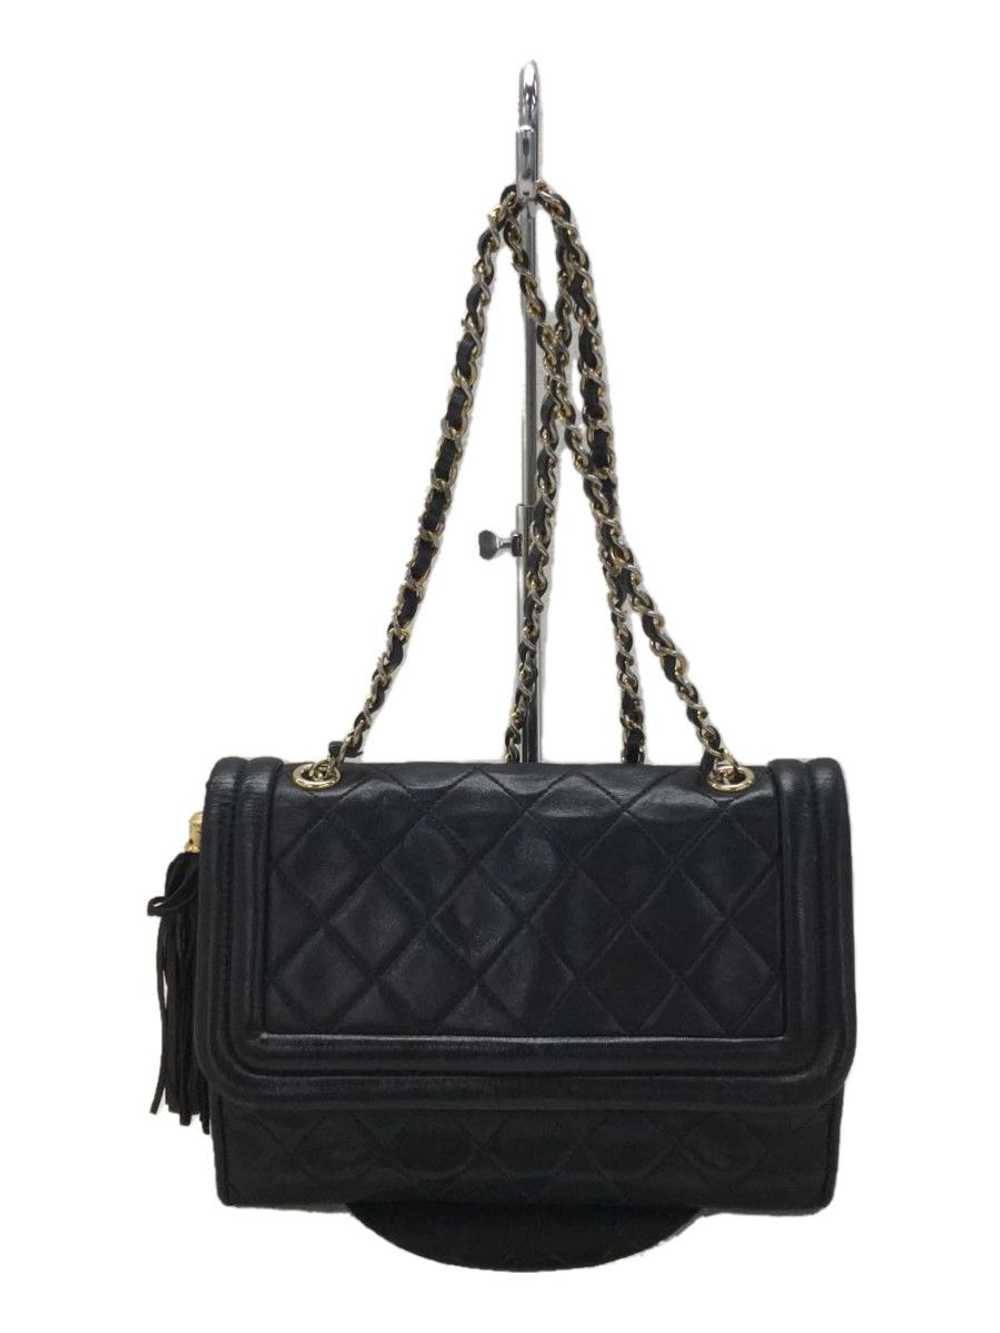 Chanel Chanel Shoulder Bag Leather Black - image 1